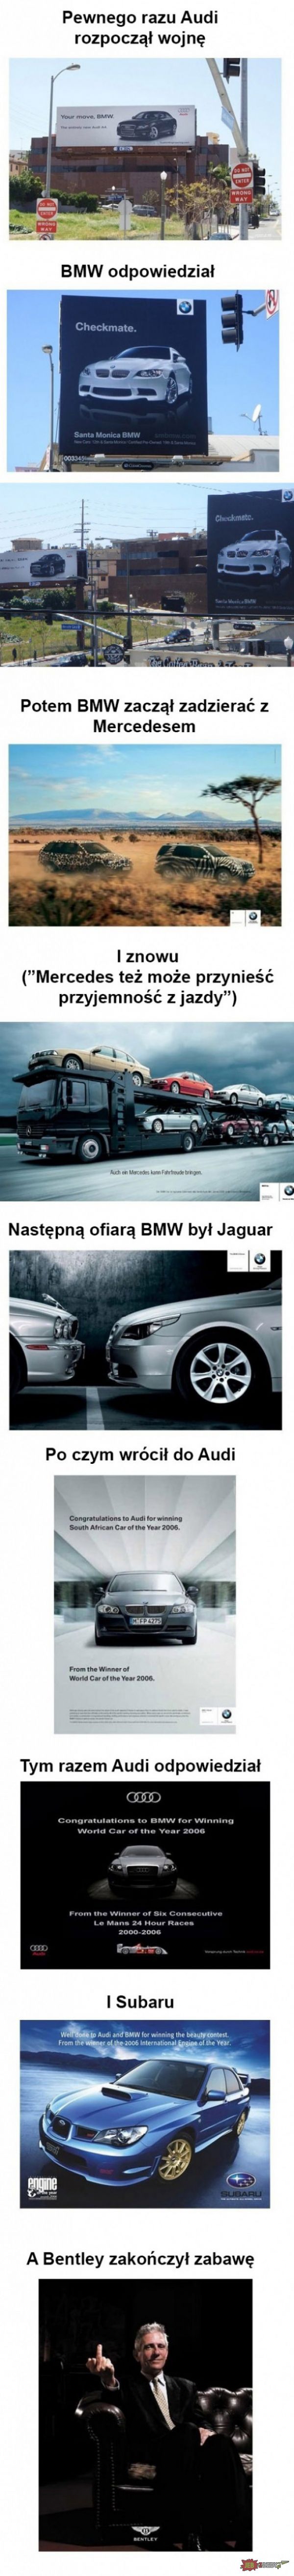 Wojna BMW z Audi